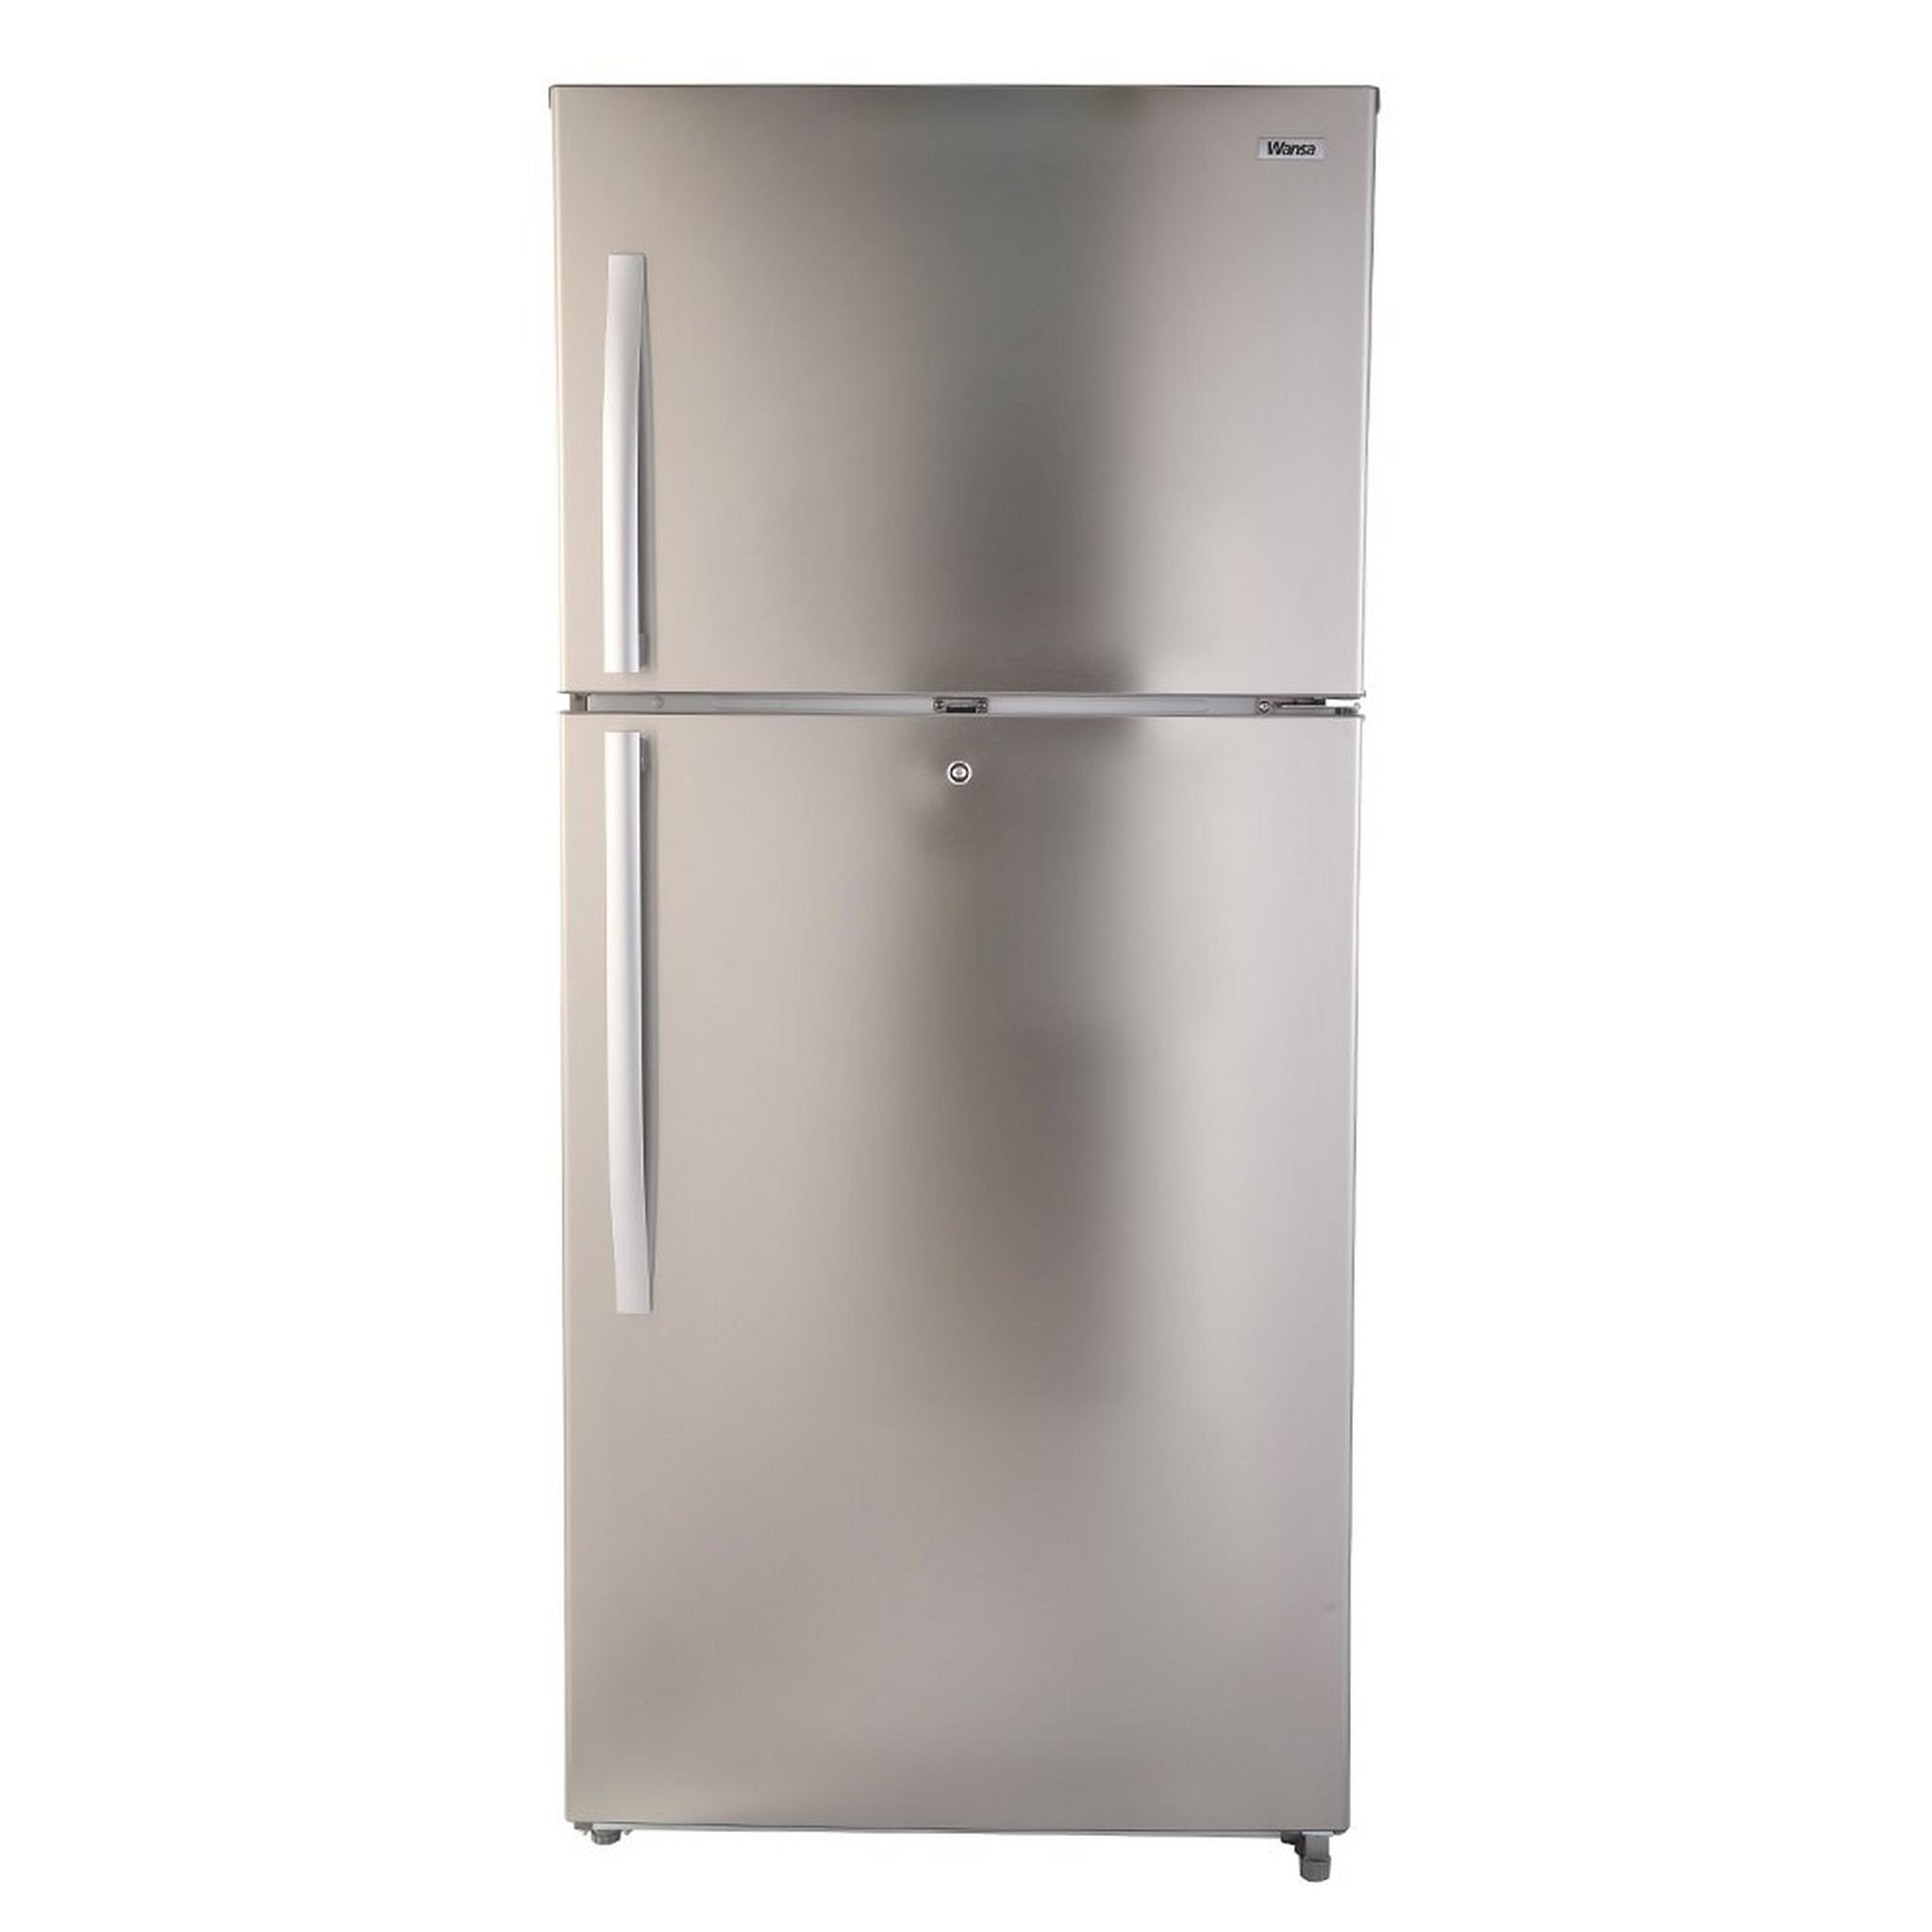 Wansa Top Mount Refrigerator, 29.8CFT, 845-Liters, WRTG-845-NFSSC62 - Silver